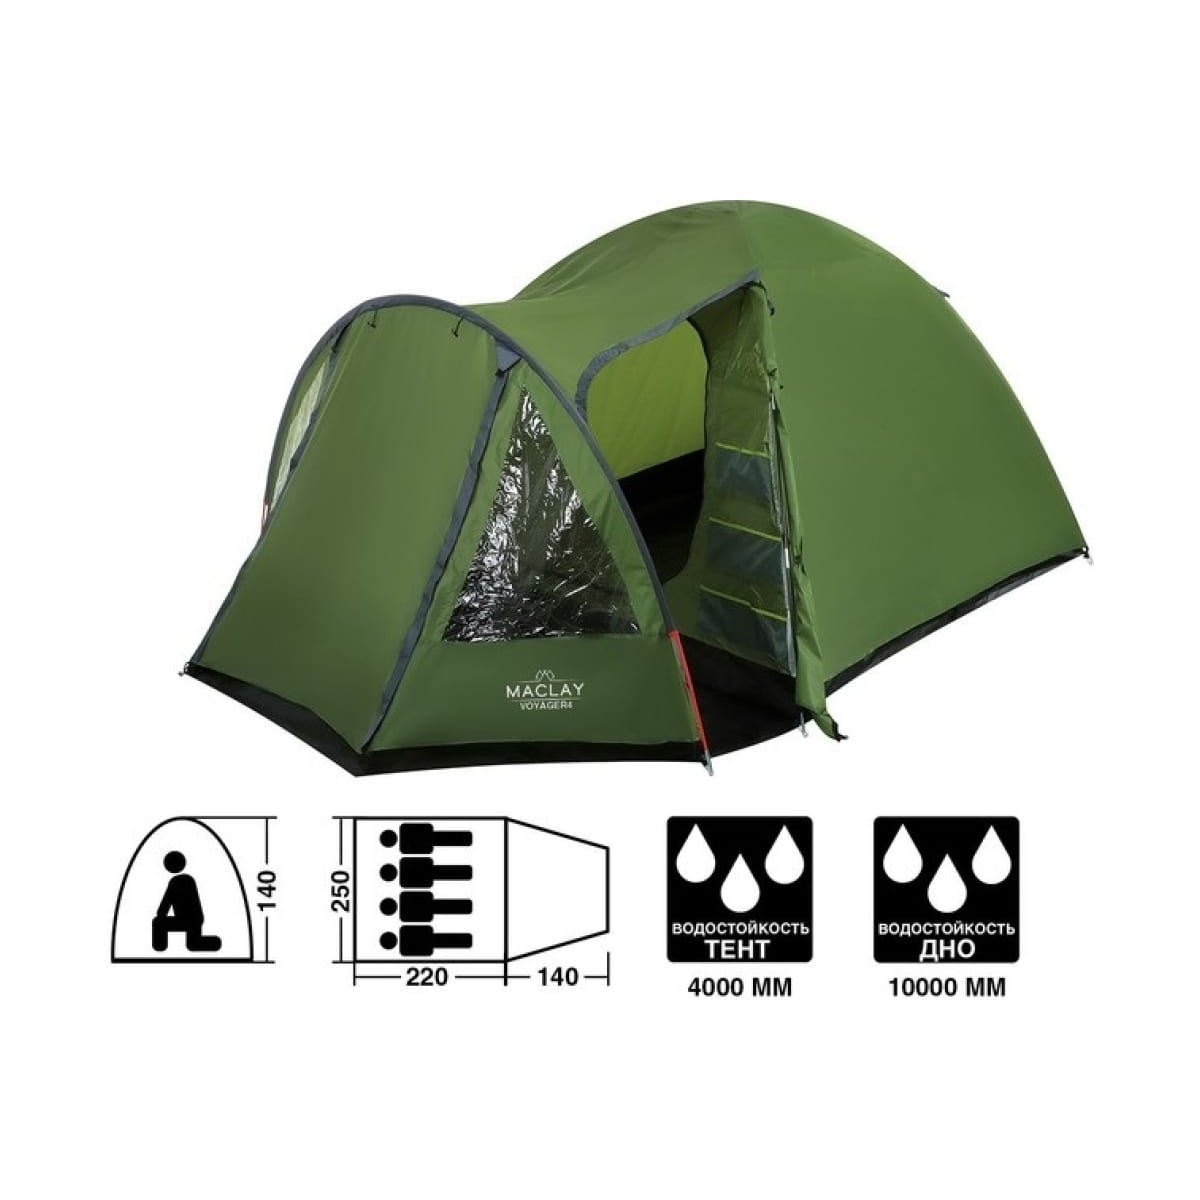 Палатка Maclay Voyager треккинговая 4 места 250х220+40х140 см, цвет зелёный - фото 9